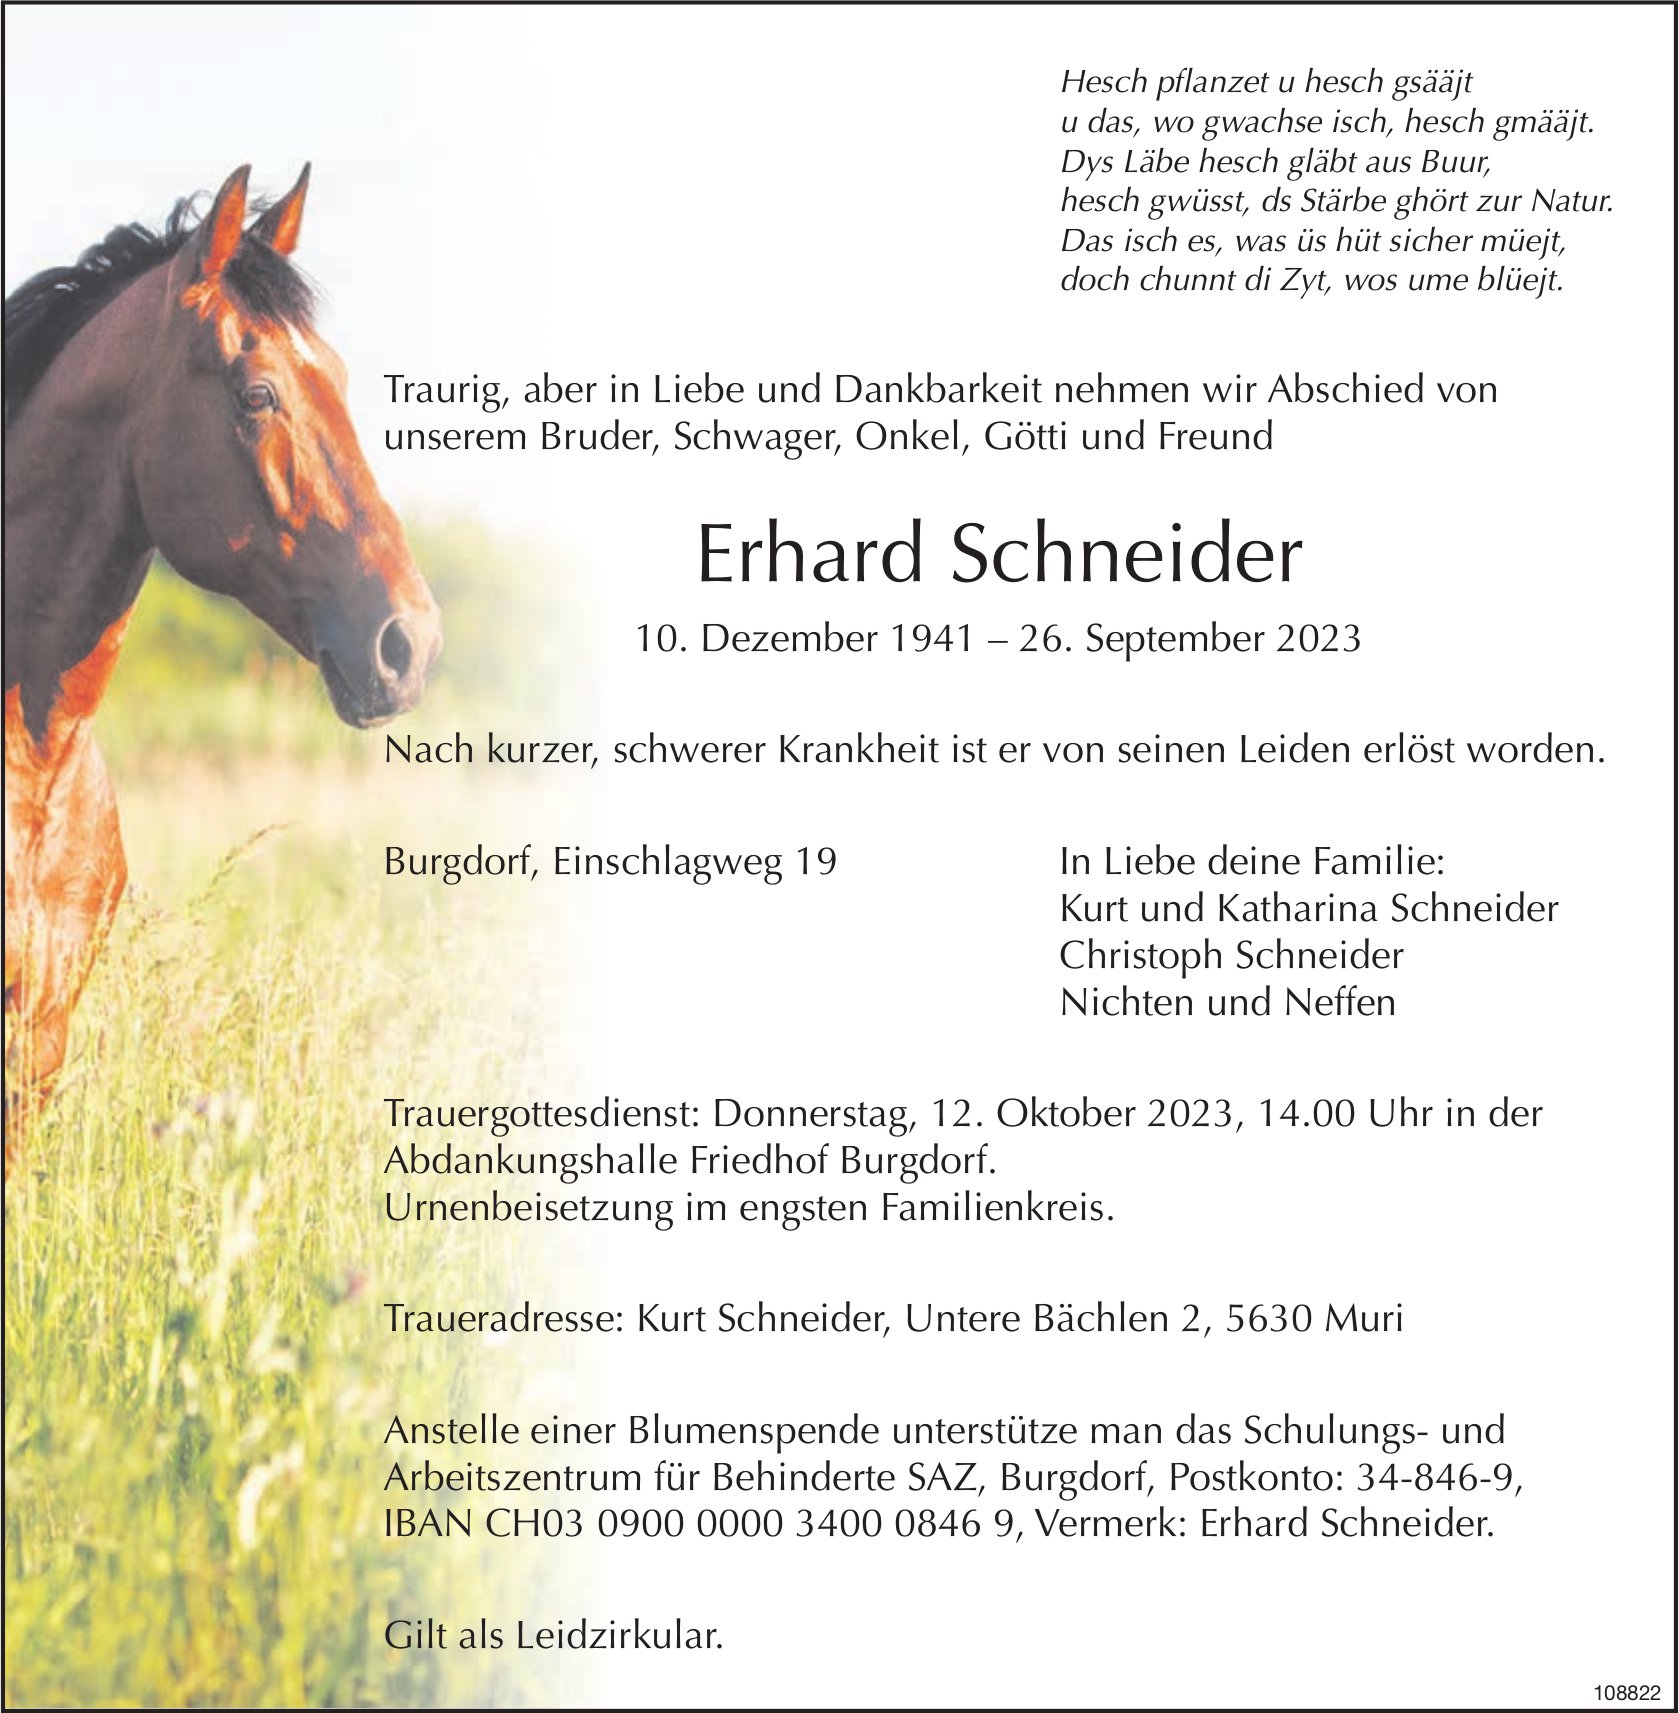 Erhard Schneider, September 2023 / TA